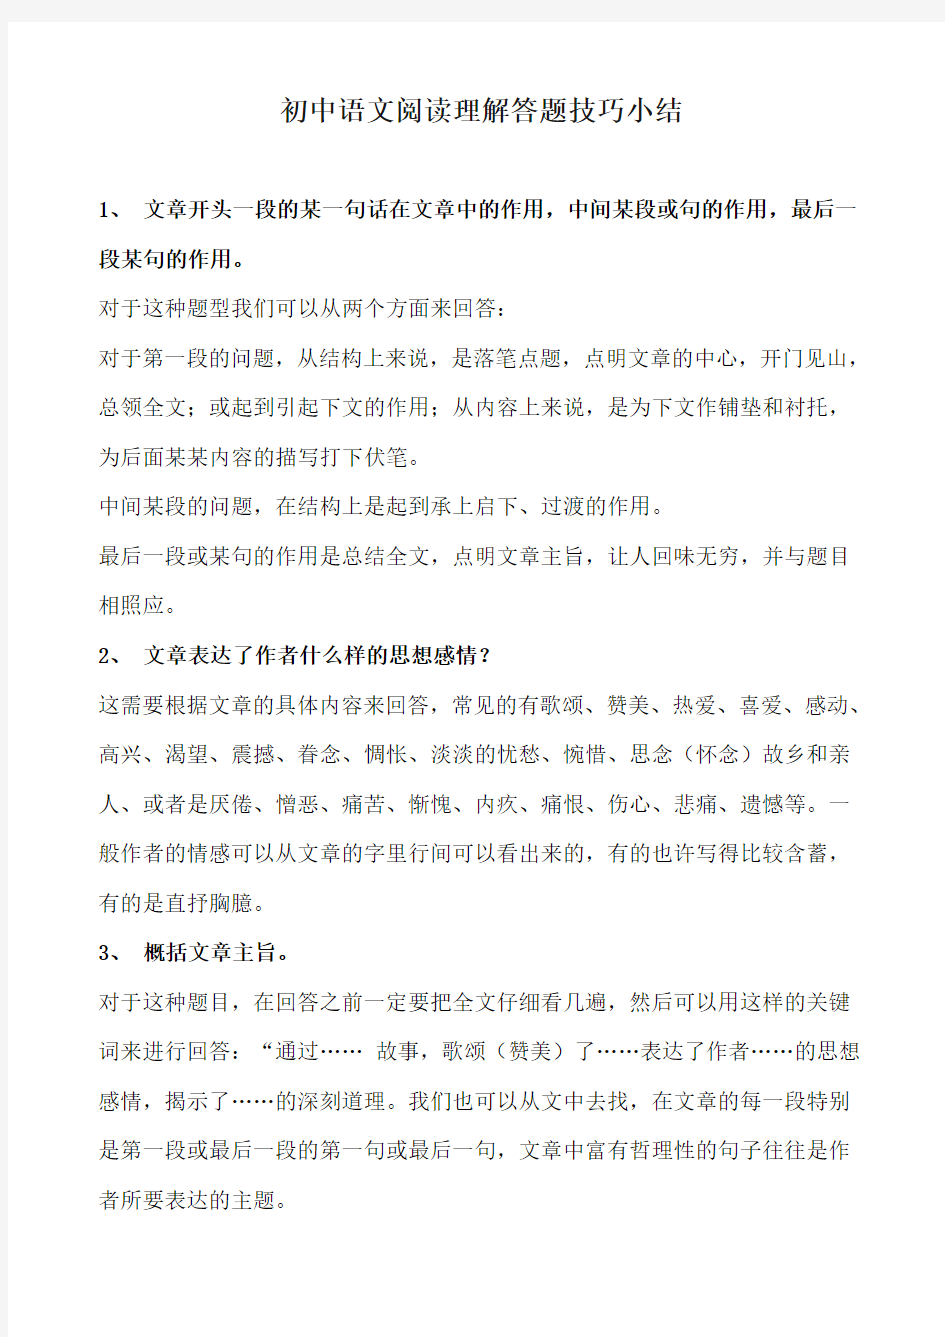 初中语文阅读理解答题技巧小结